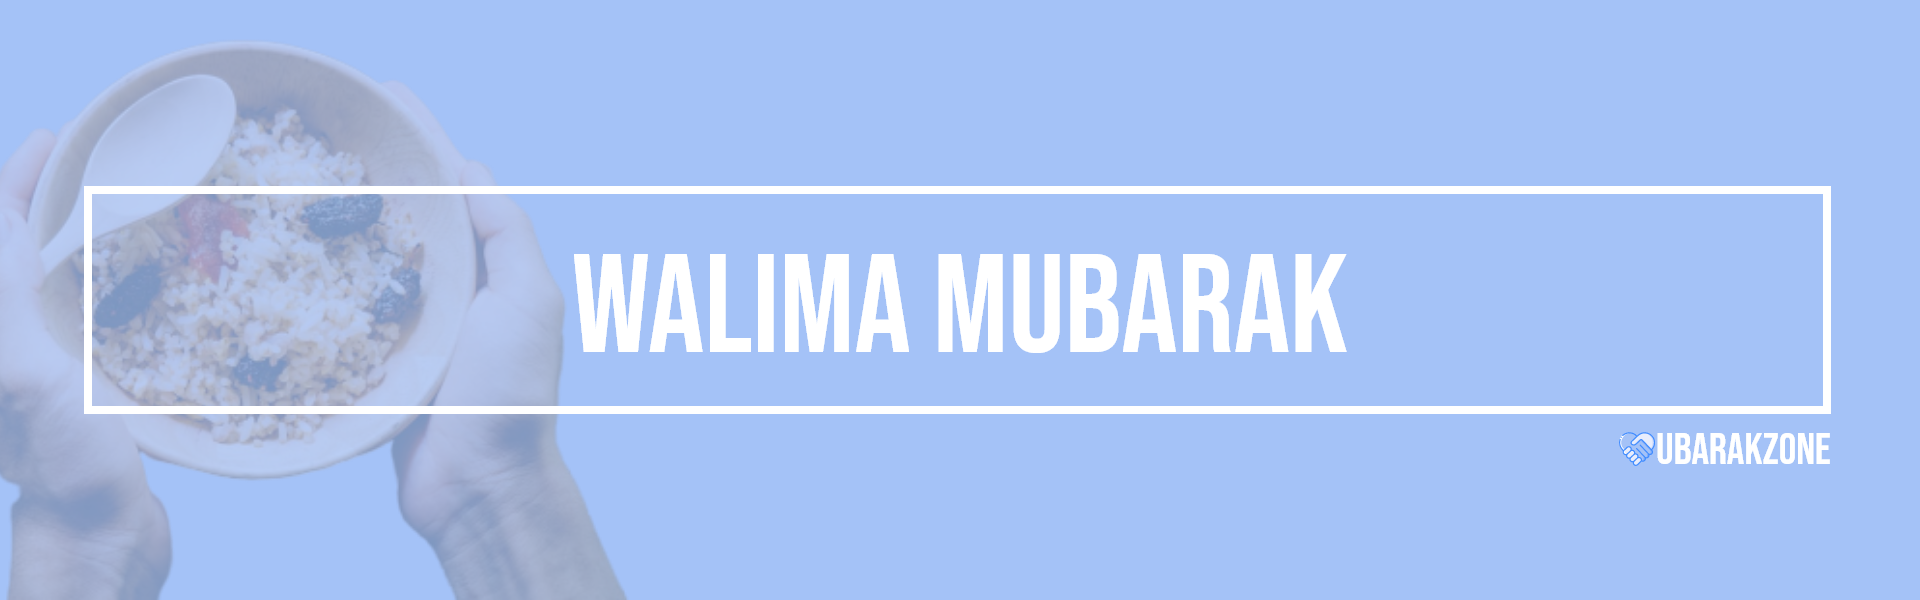 walima mubarak wishes messages